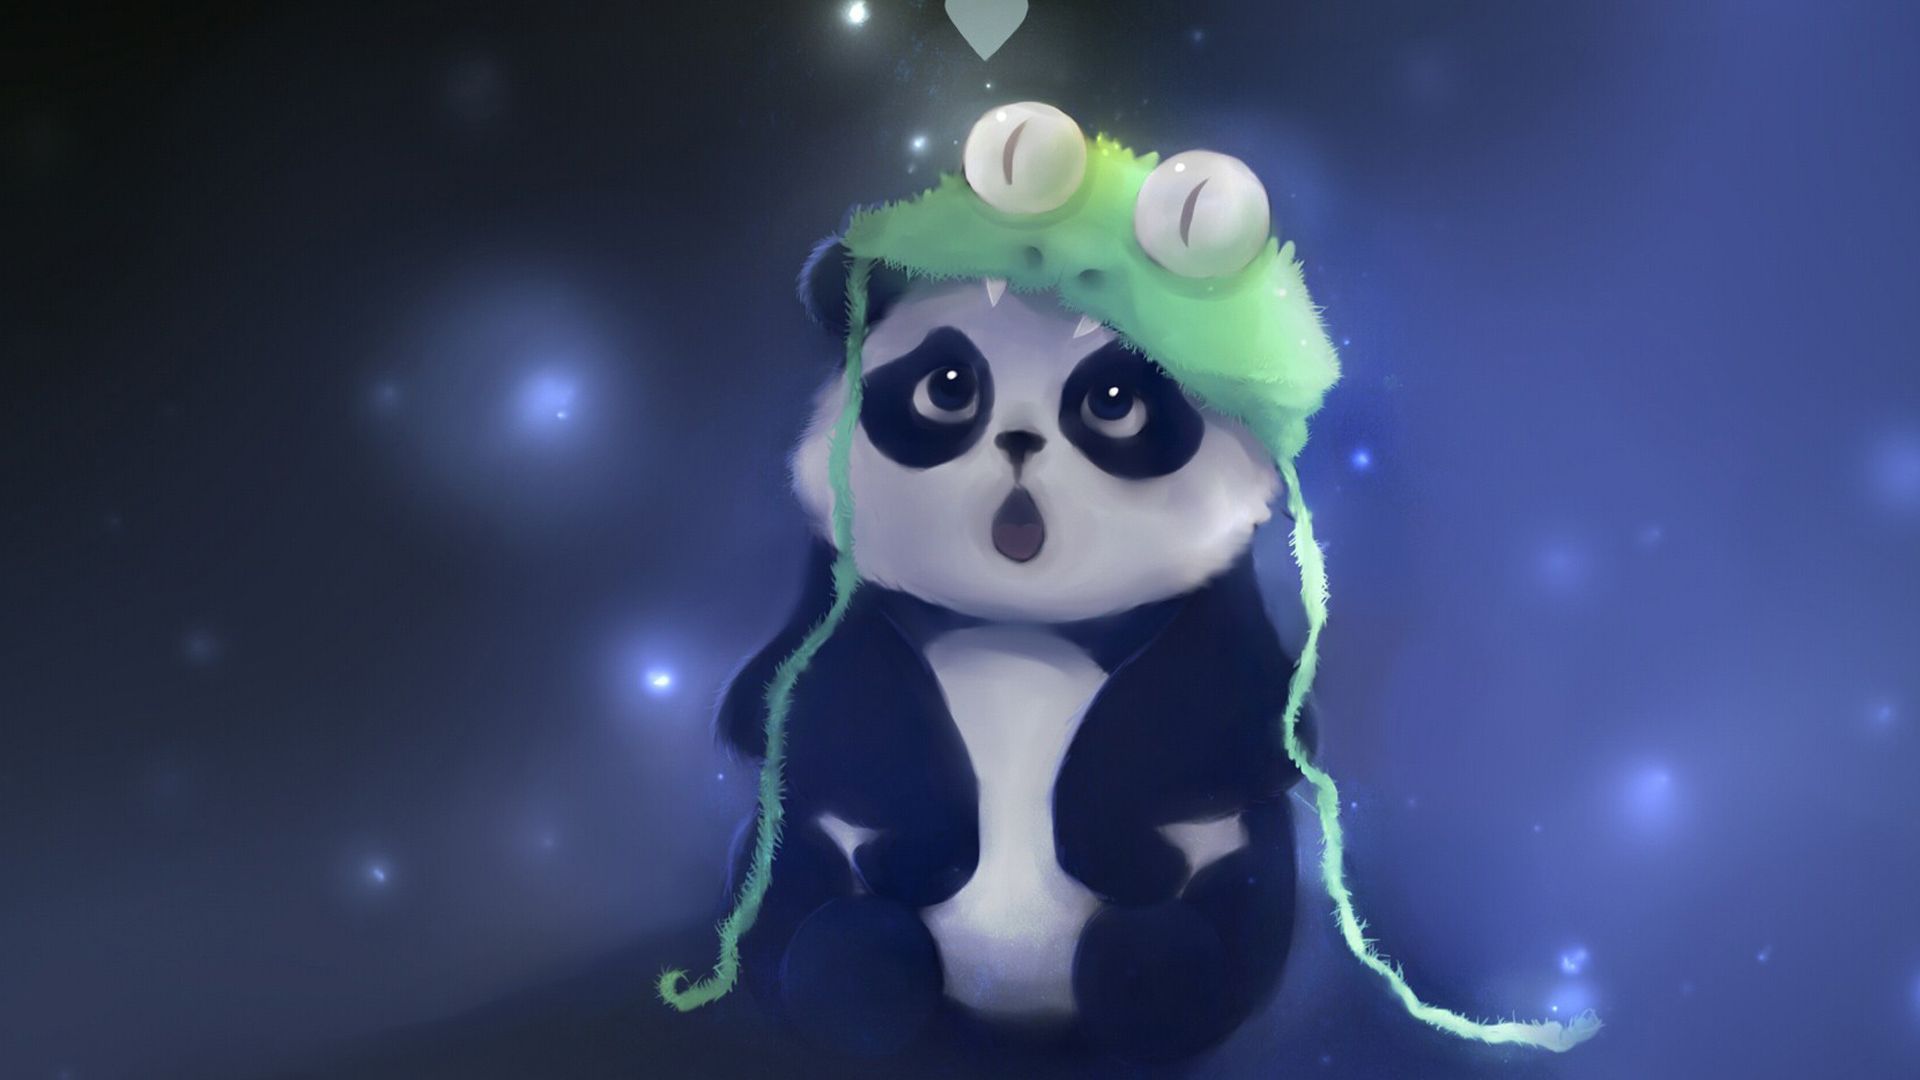 Cute Panda Wallpapers: Nâng tâm trạng ngay lập tức với những hình nền Gấu trúc đáng yêu miễn phí tải xuống. Hãy đưa bạn đến bầu không khí yên bình được tạo bởi những con Gấu trúc đáng yêu và tạo niềm vui cho ngày của bạn. 